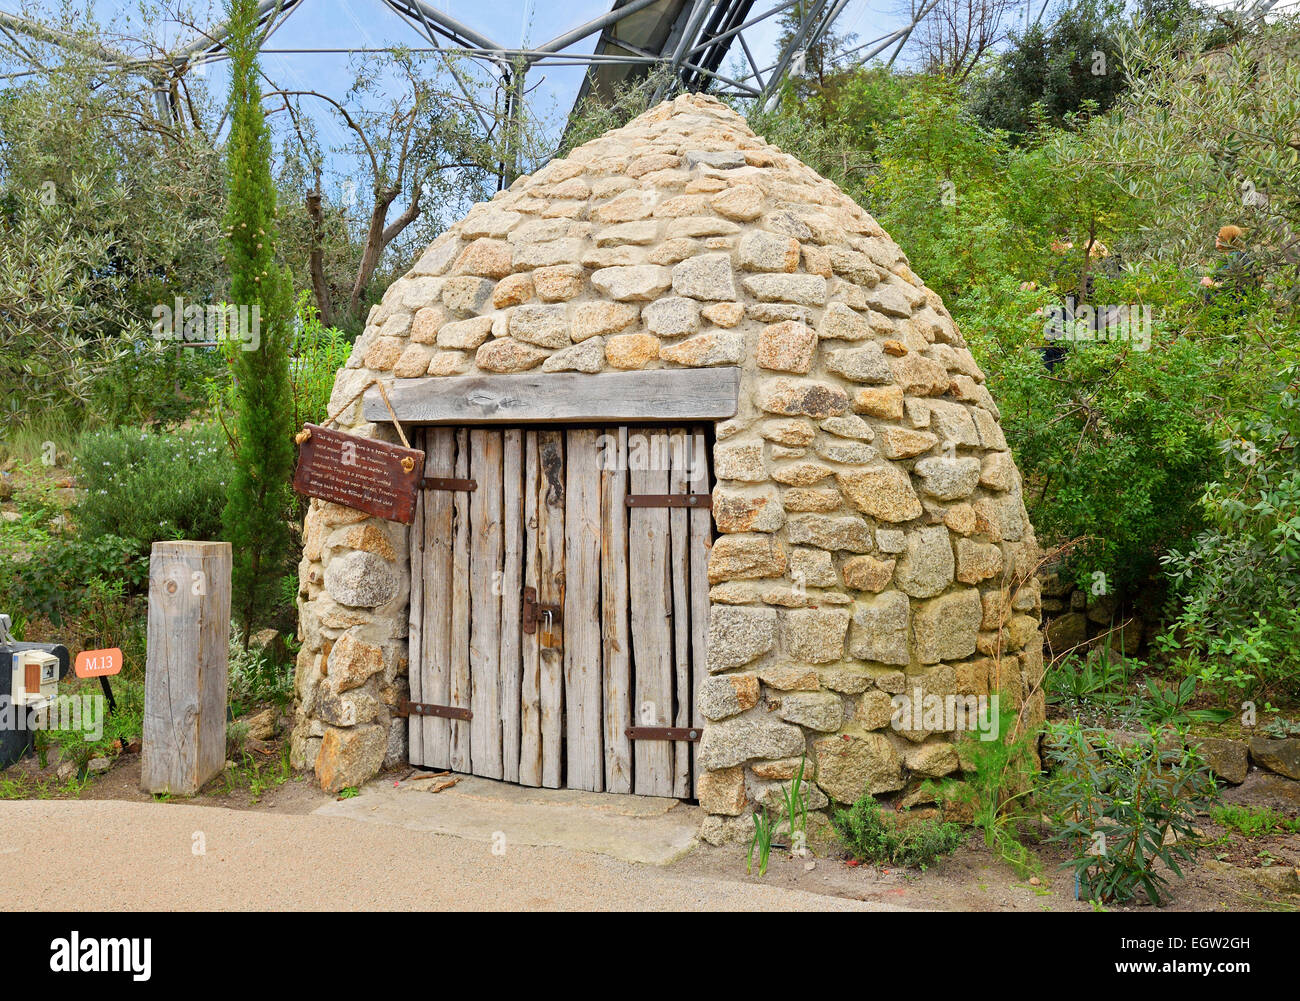 Une cuisine française Borrie ( une cabane de pierres construites pour abriter les bergers ) Exposition à l'Eden Project dans la région de Cornwall, UK Banque D'Images